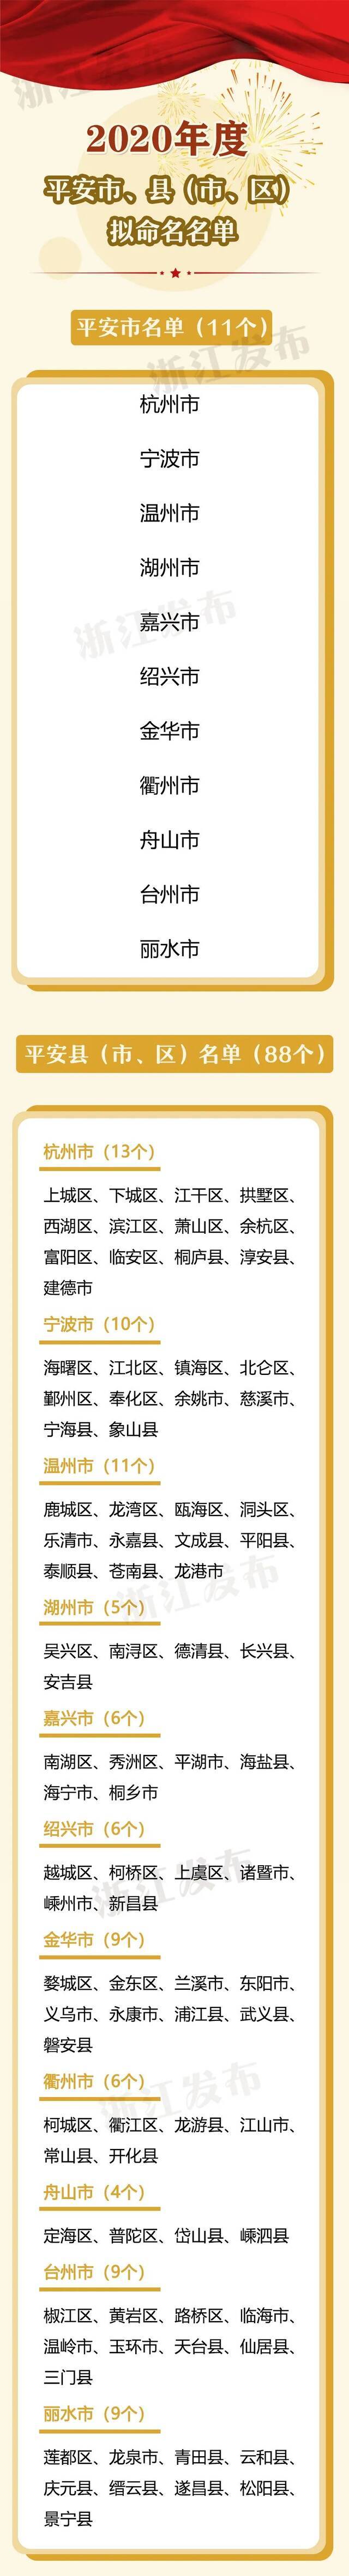 浙江省2020年度平安市、县（市、区）拟命名名单公示